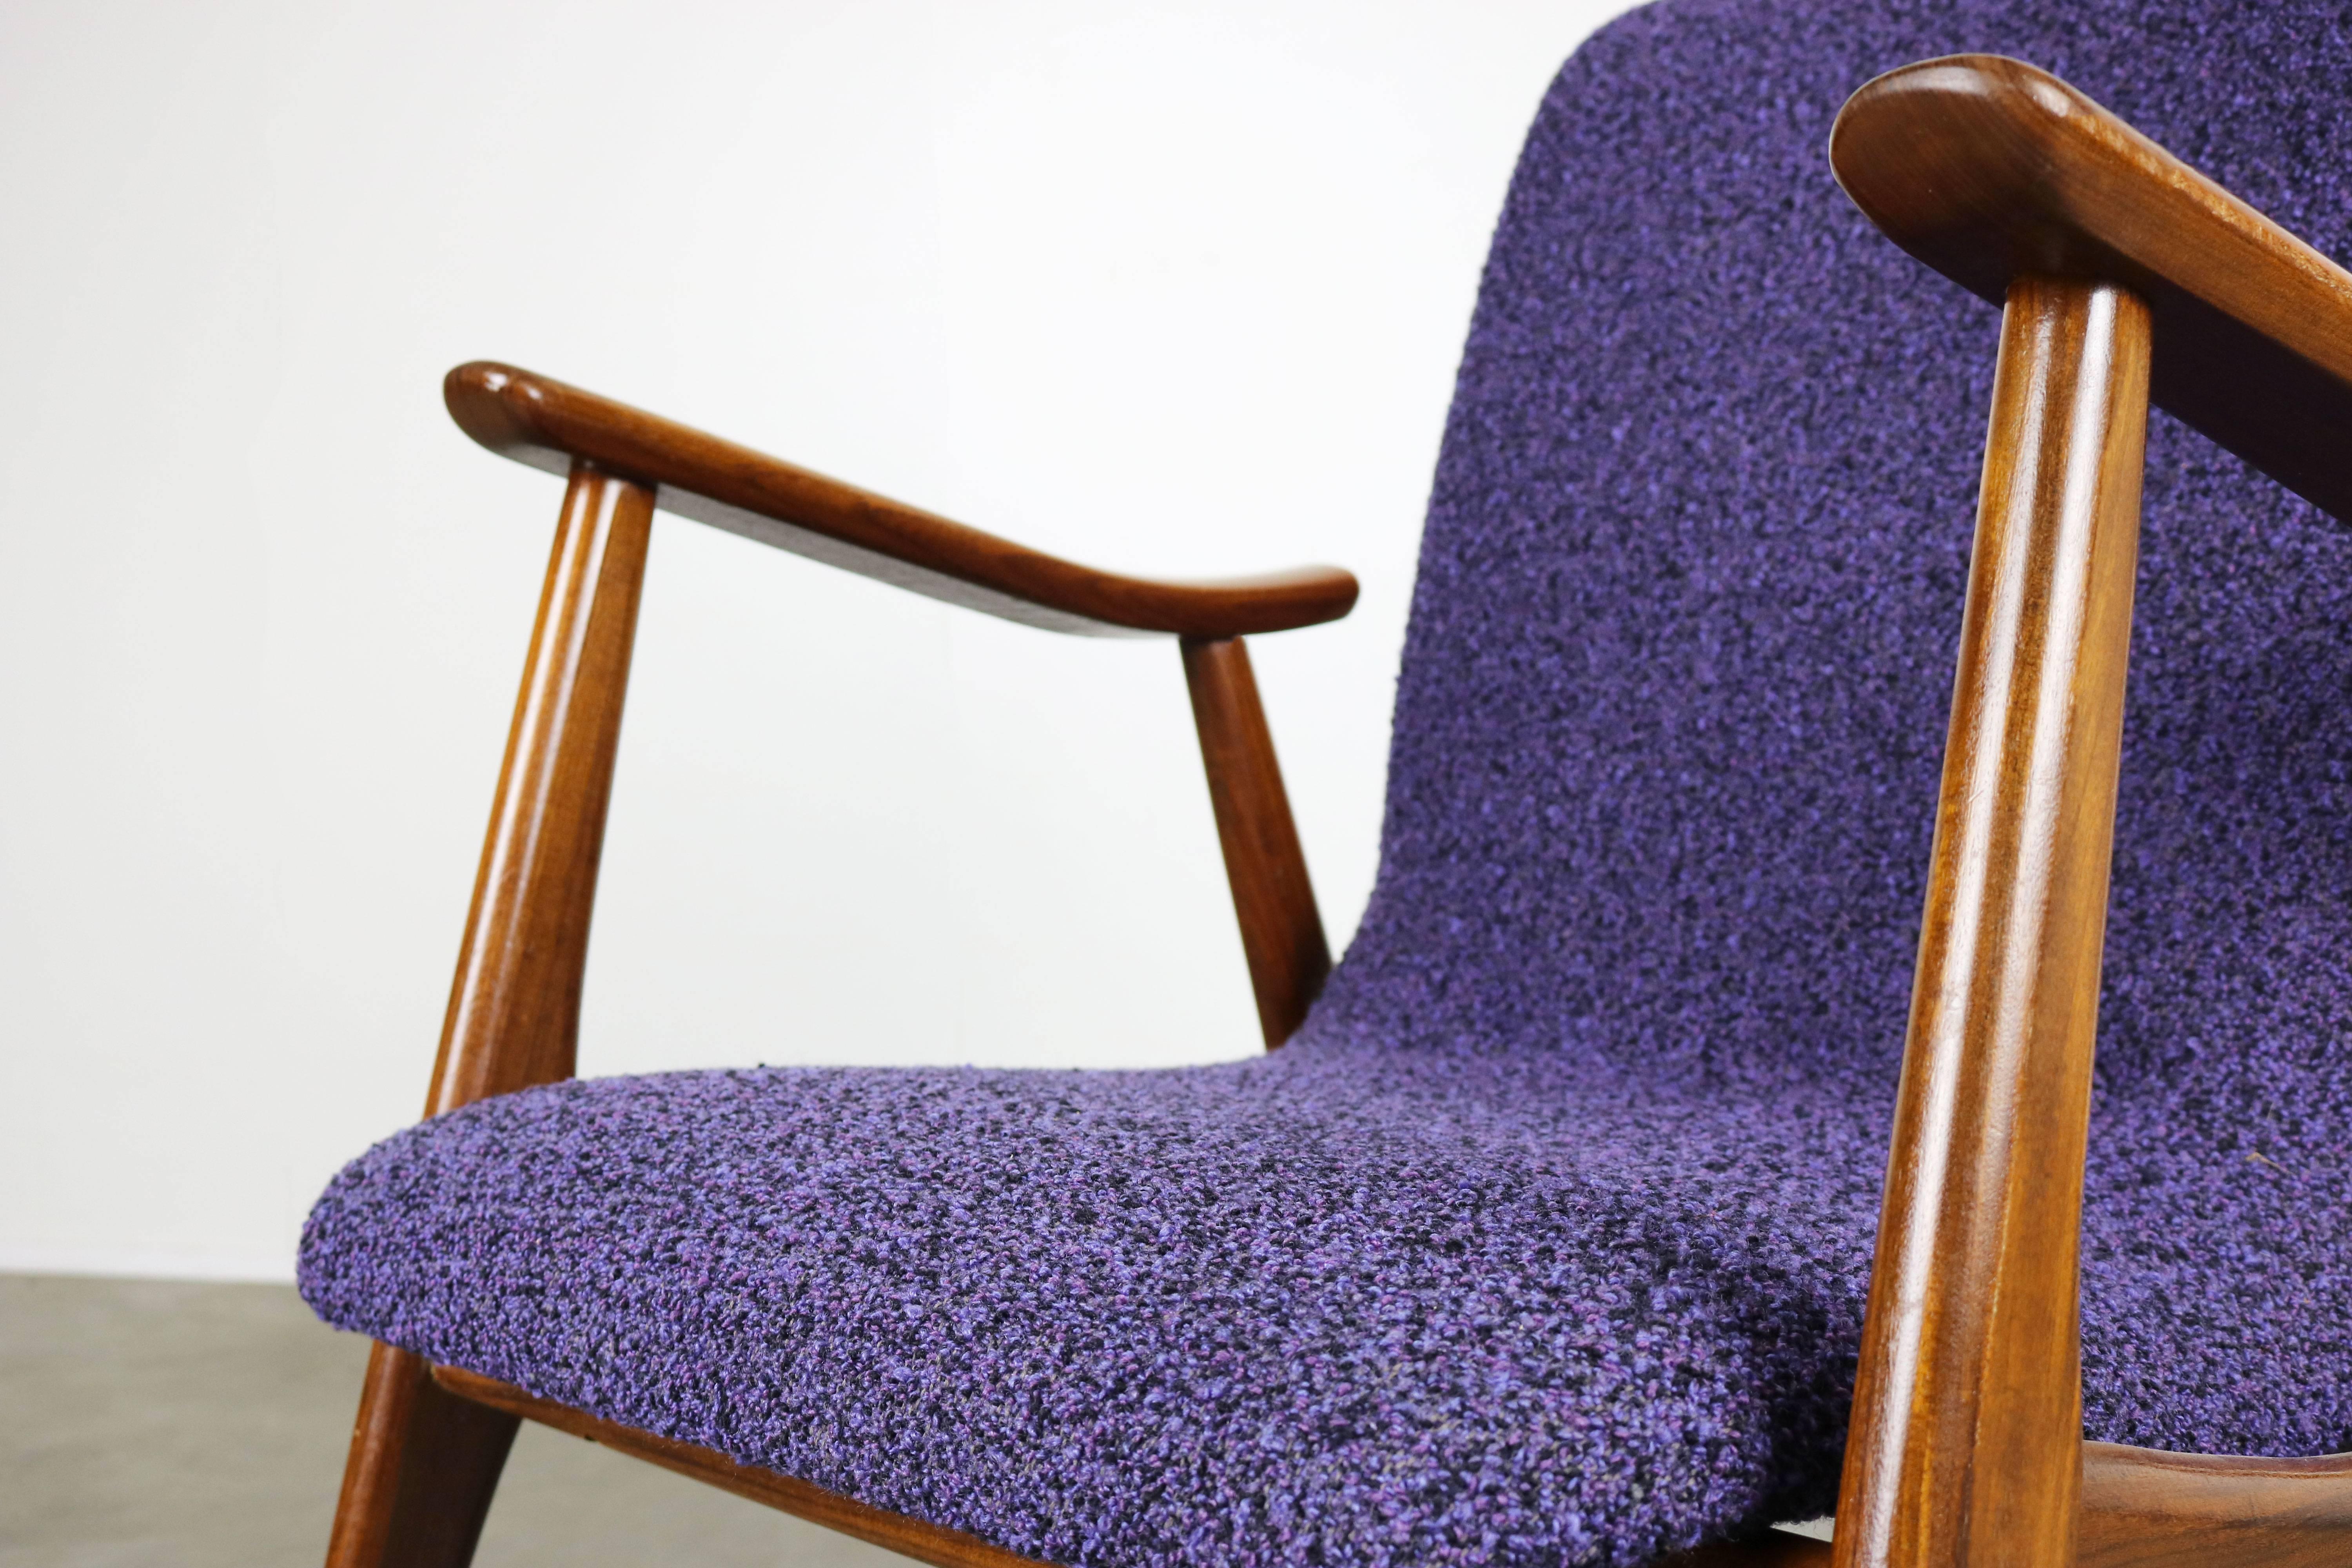 Set of Two Teak Lounge Chairs by Louis Van Teeffelen for Webe 1960 Brown Purple 3